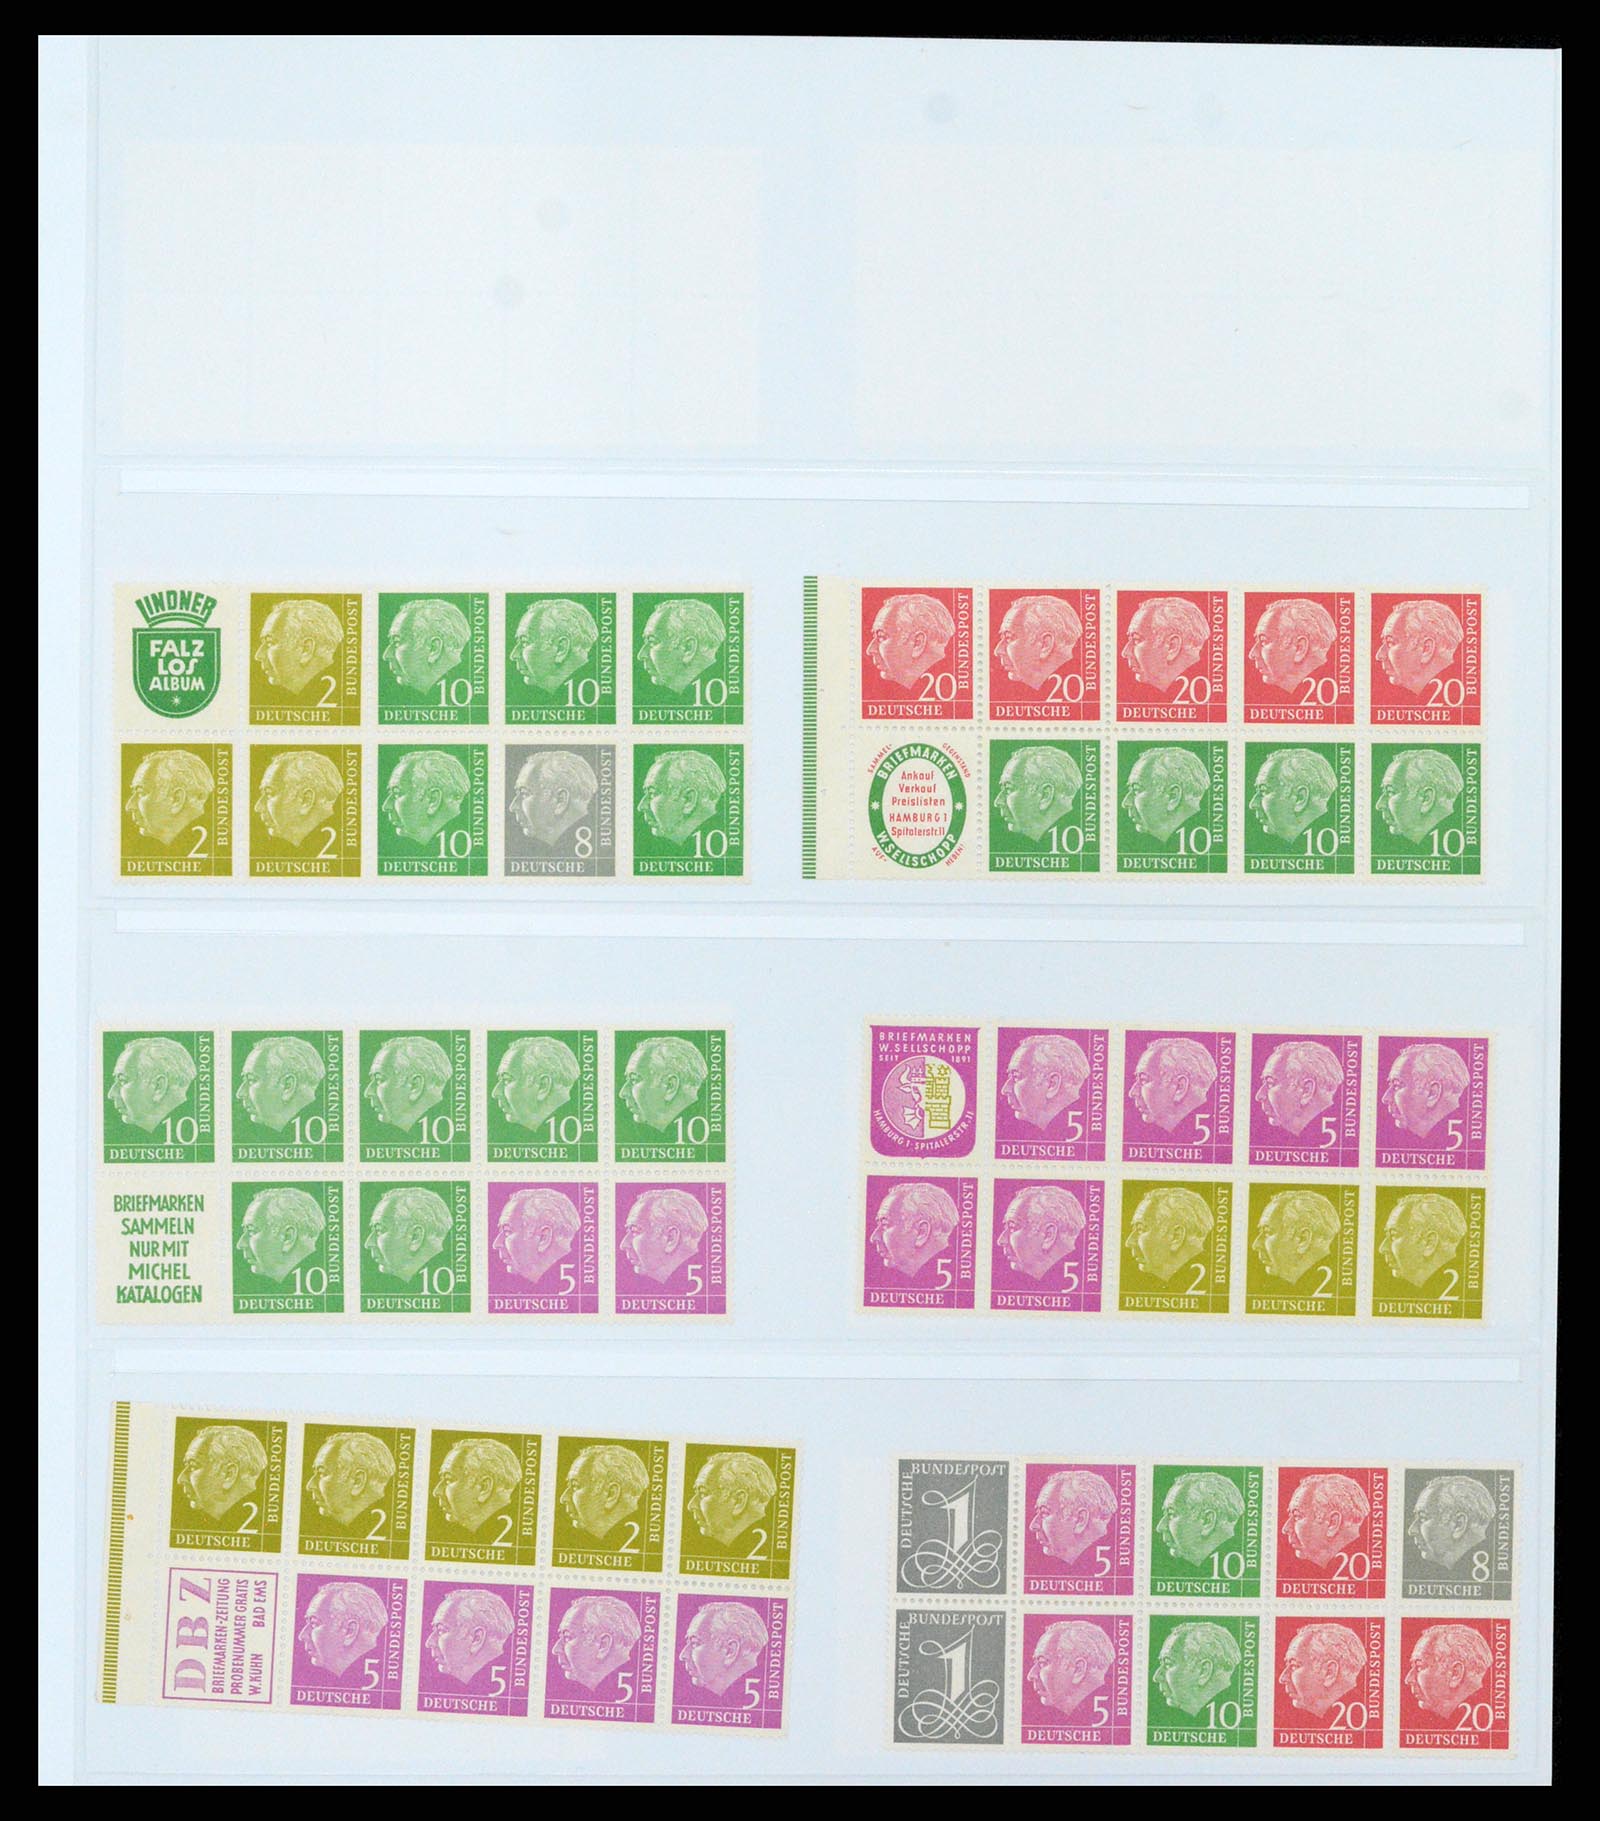 37336 017 - Postzegelverzameling 37336 Bundespost combinaties 1955-1980.